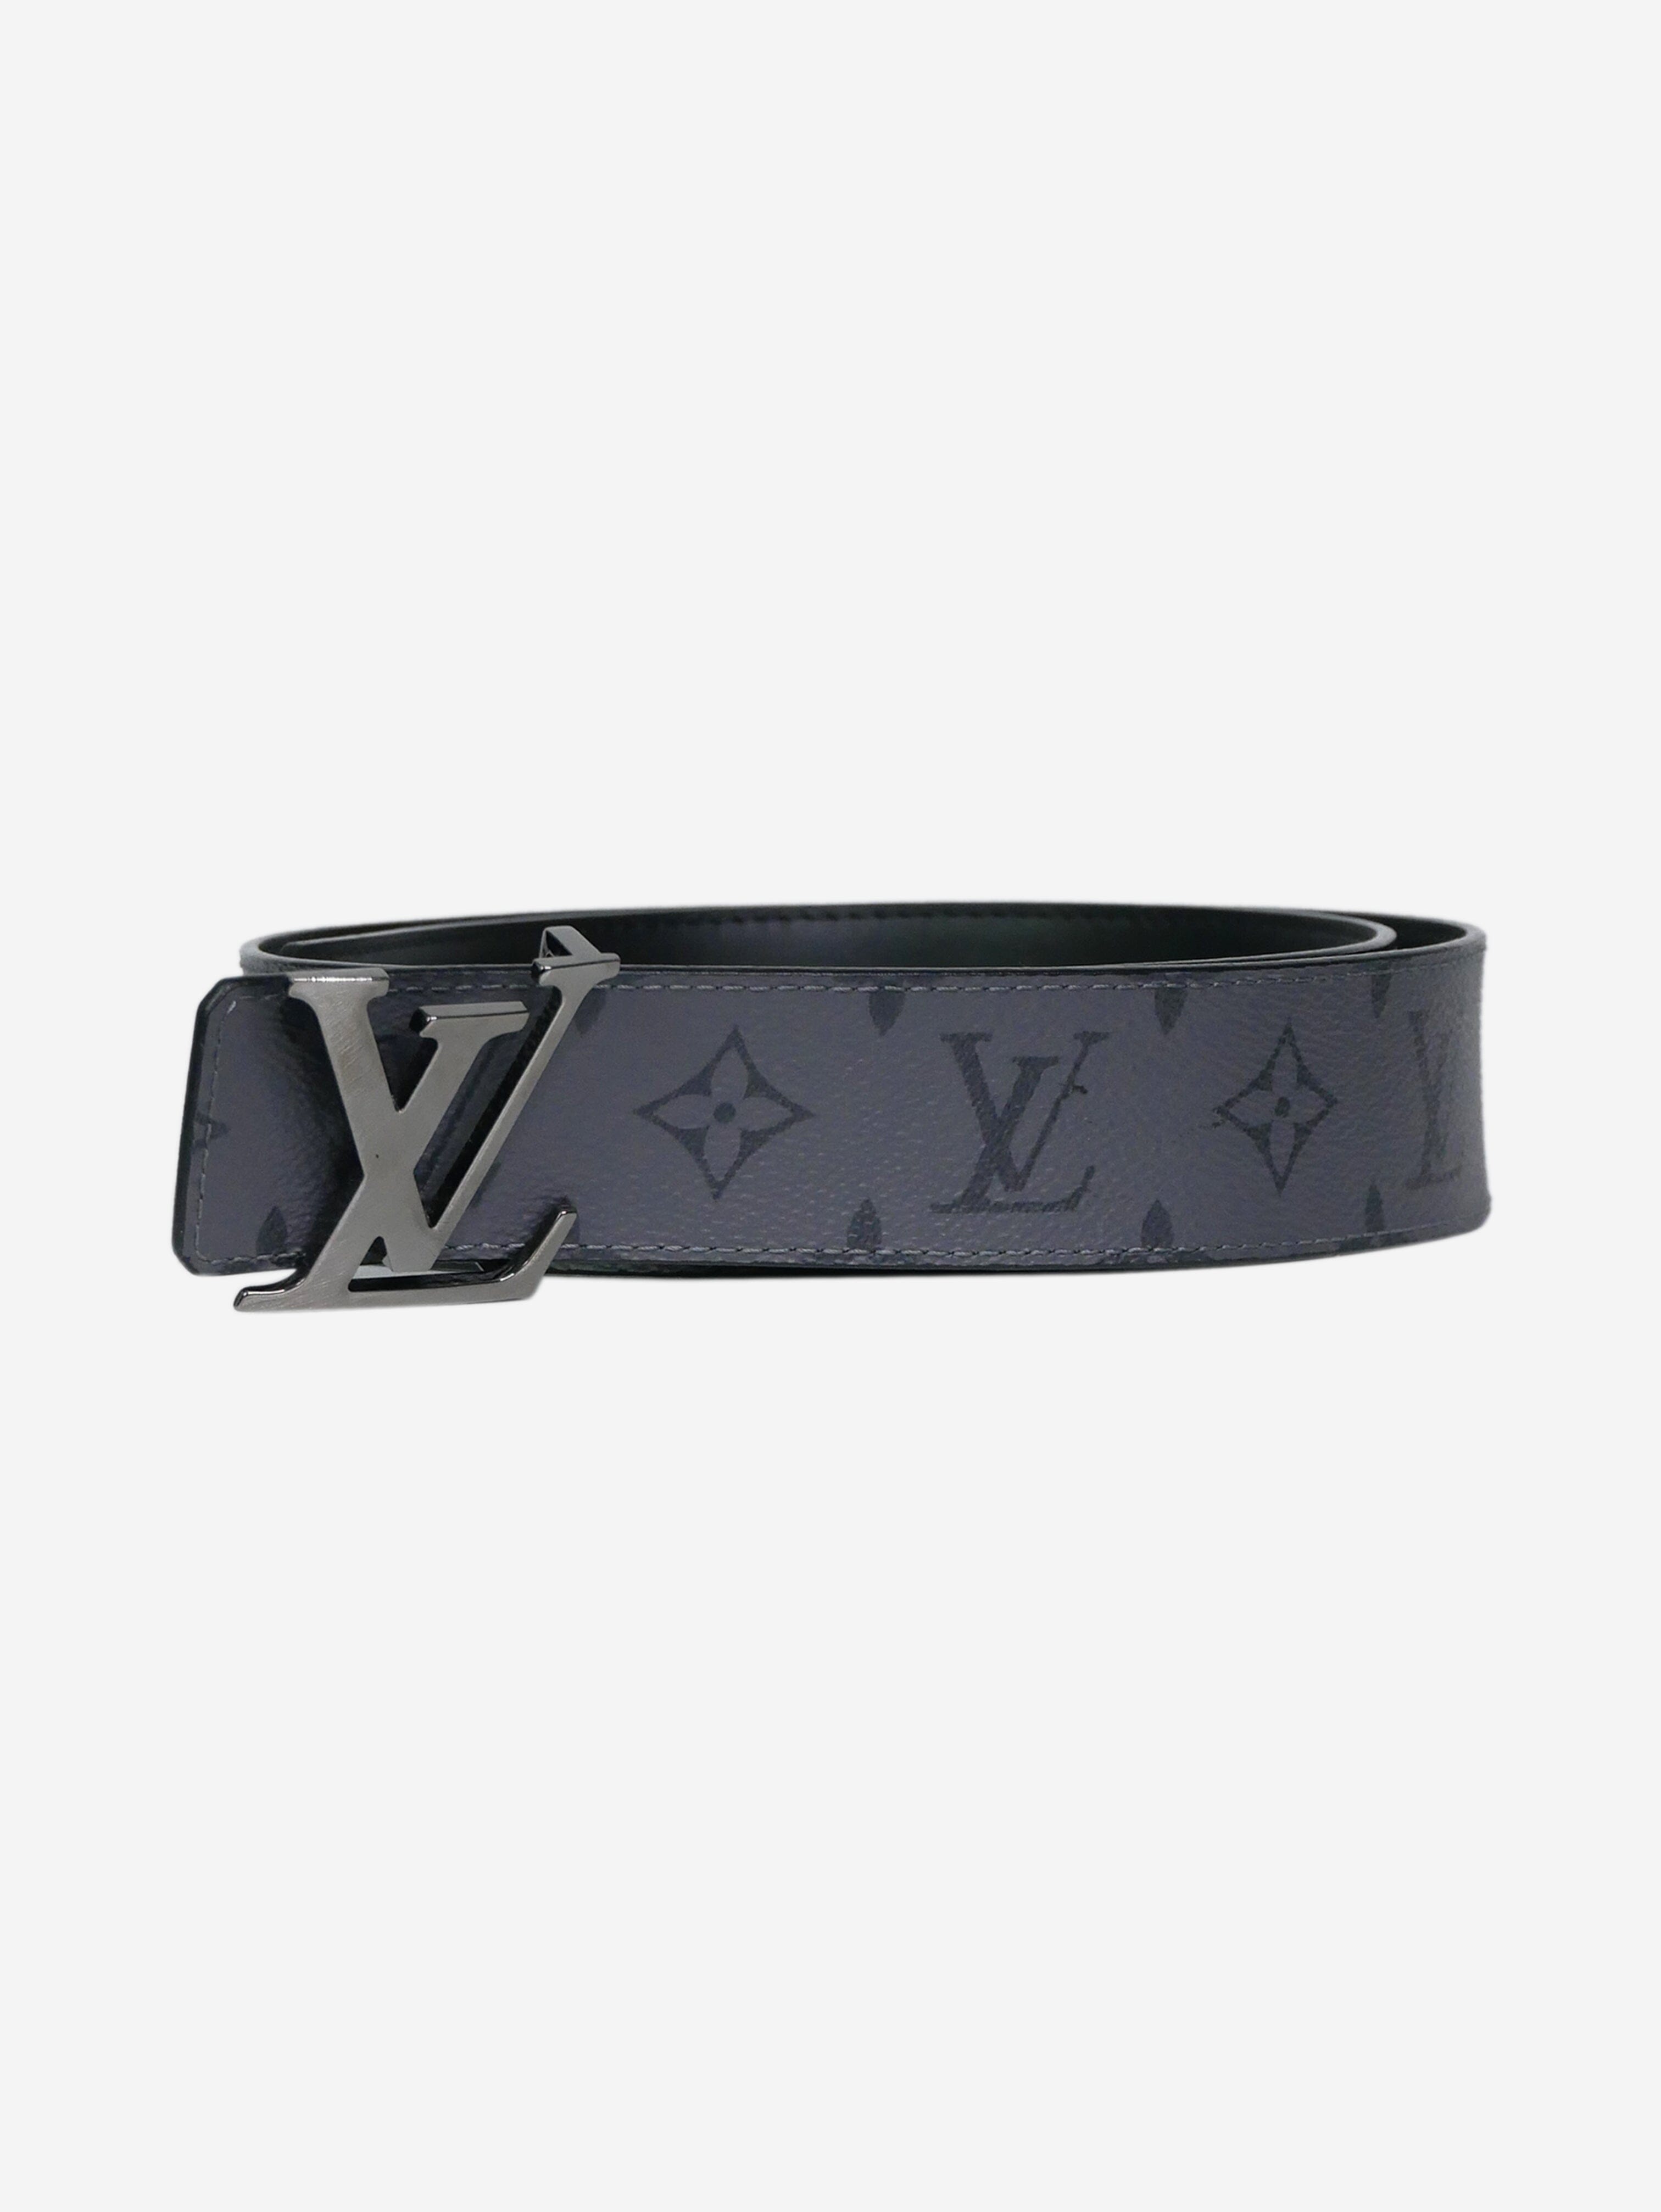 Louis Vuitton space bracelet, in Woodford Green, London